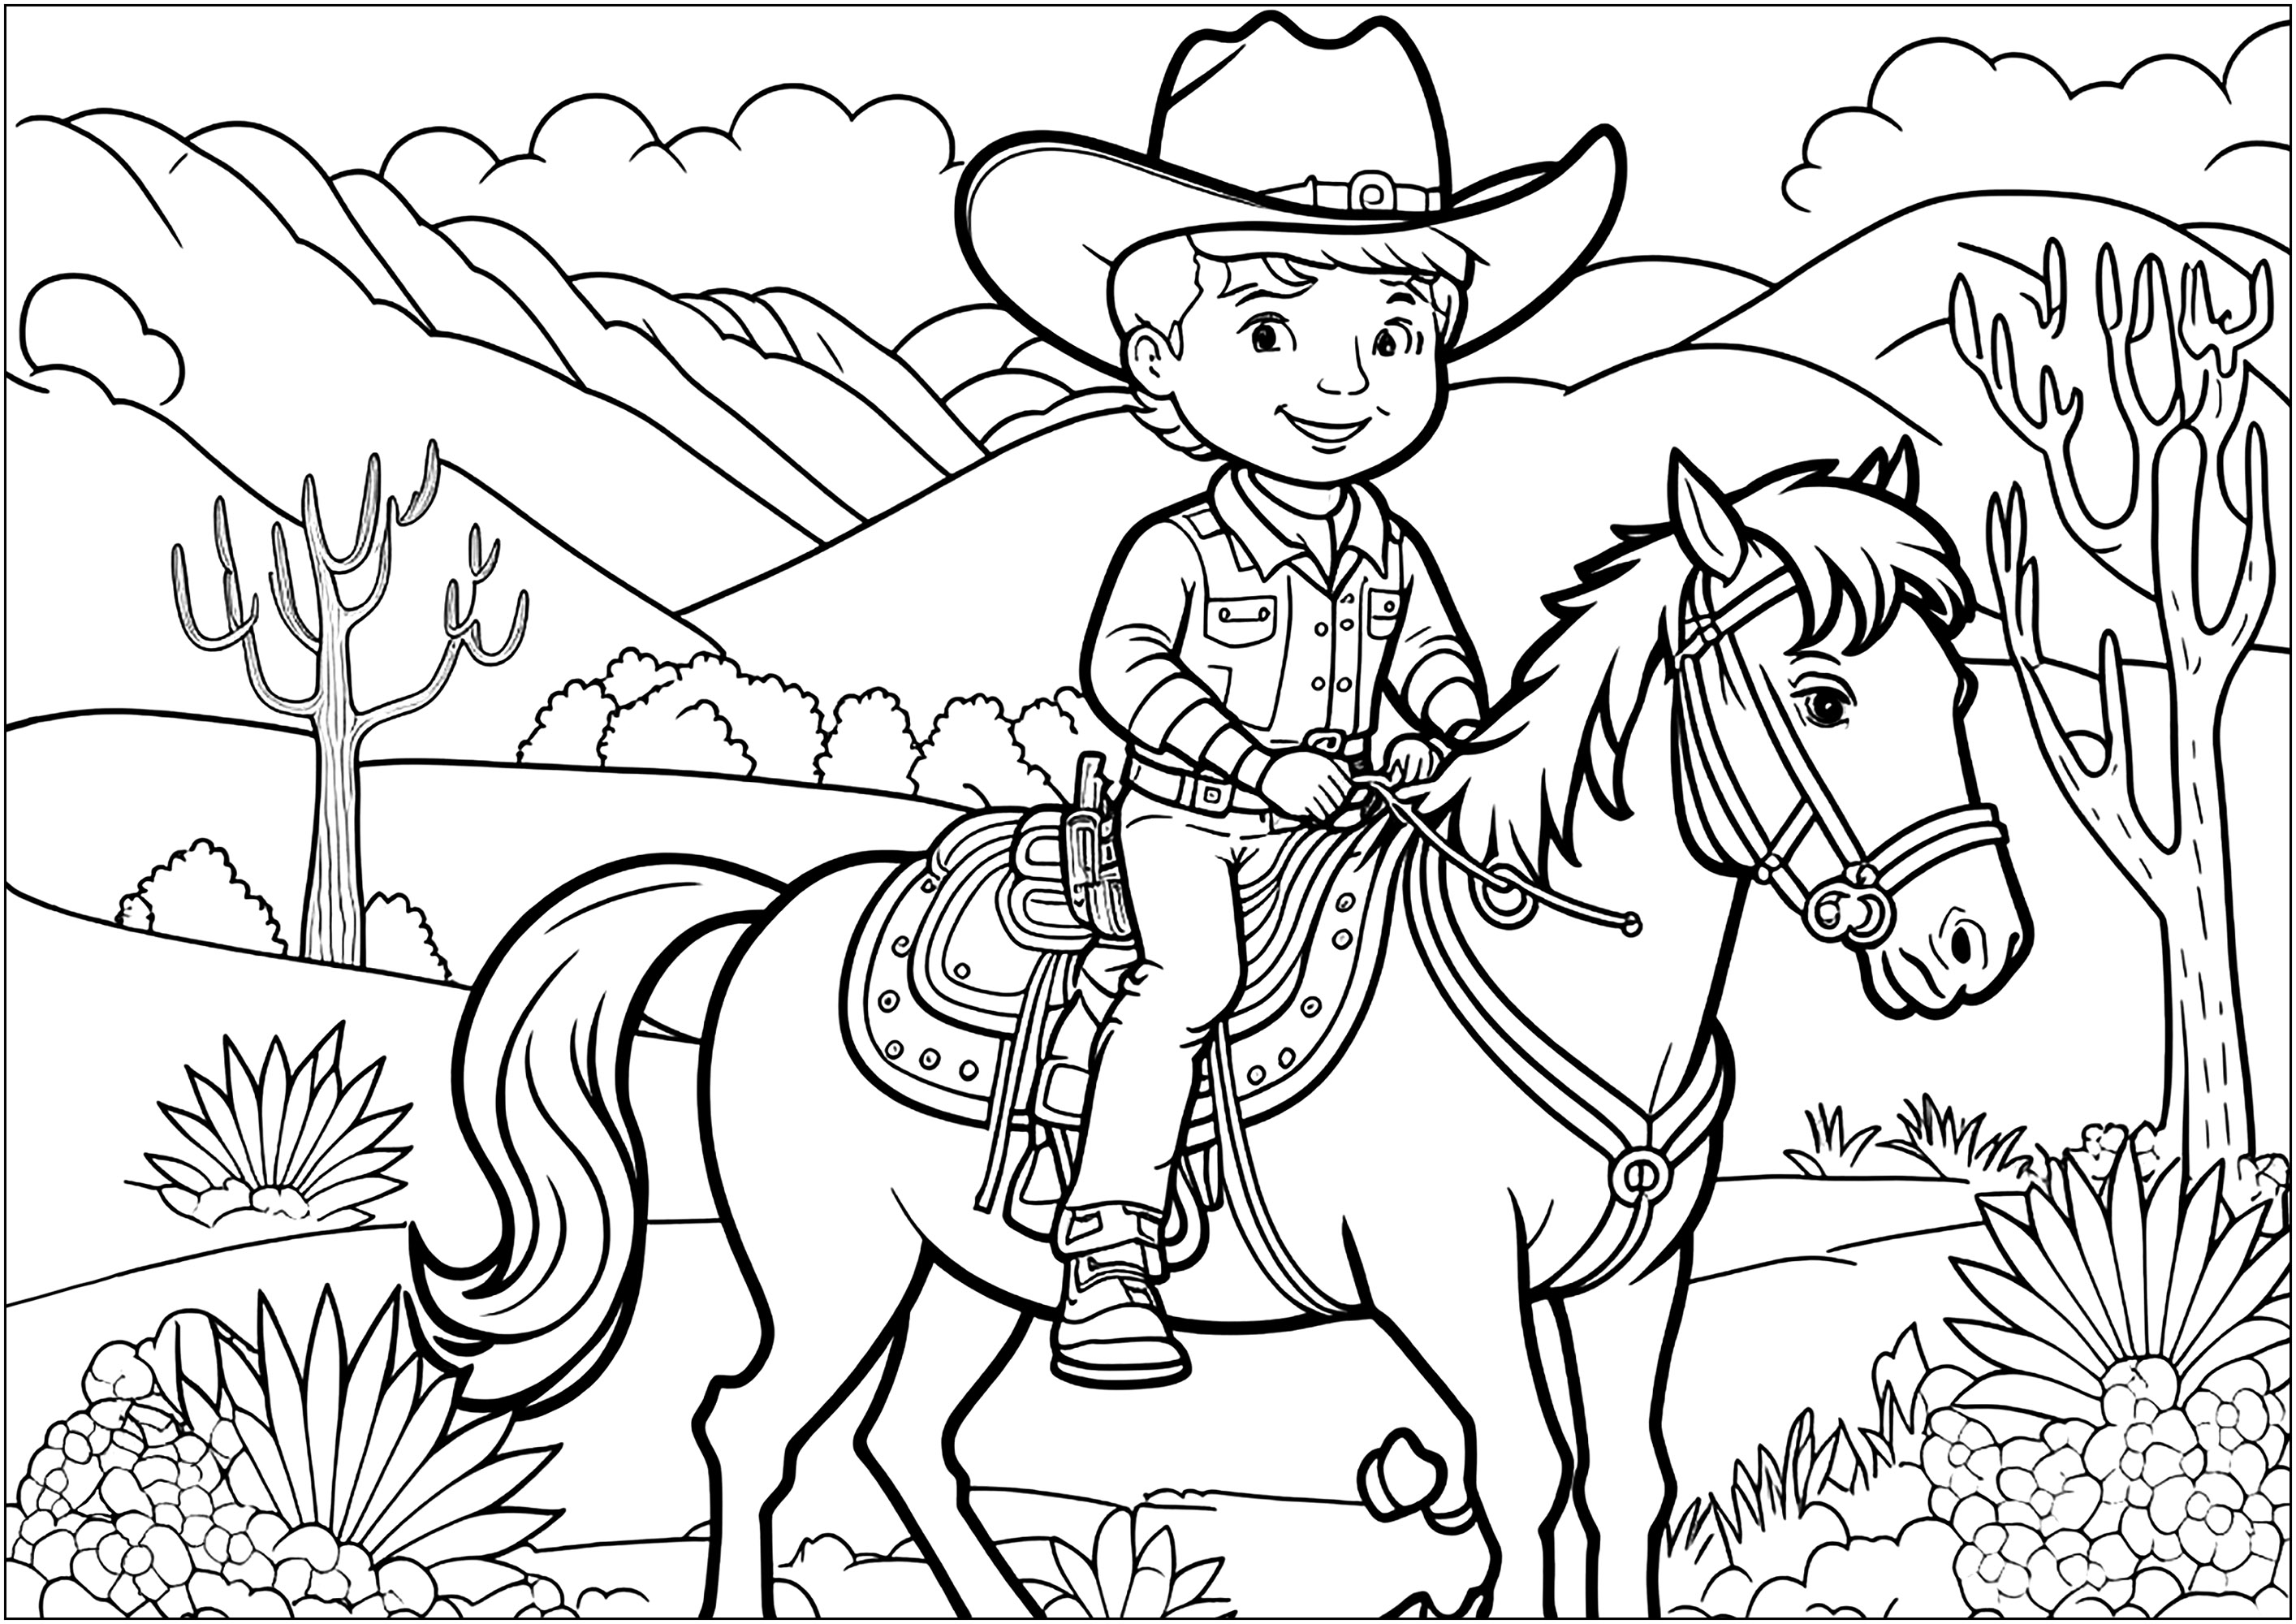 Un Cow-boy fier sur son cheval, dans un paysage ressemblant à ceux des westerns